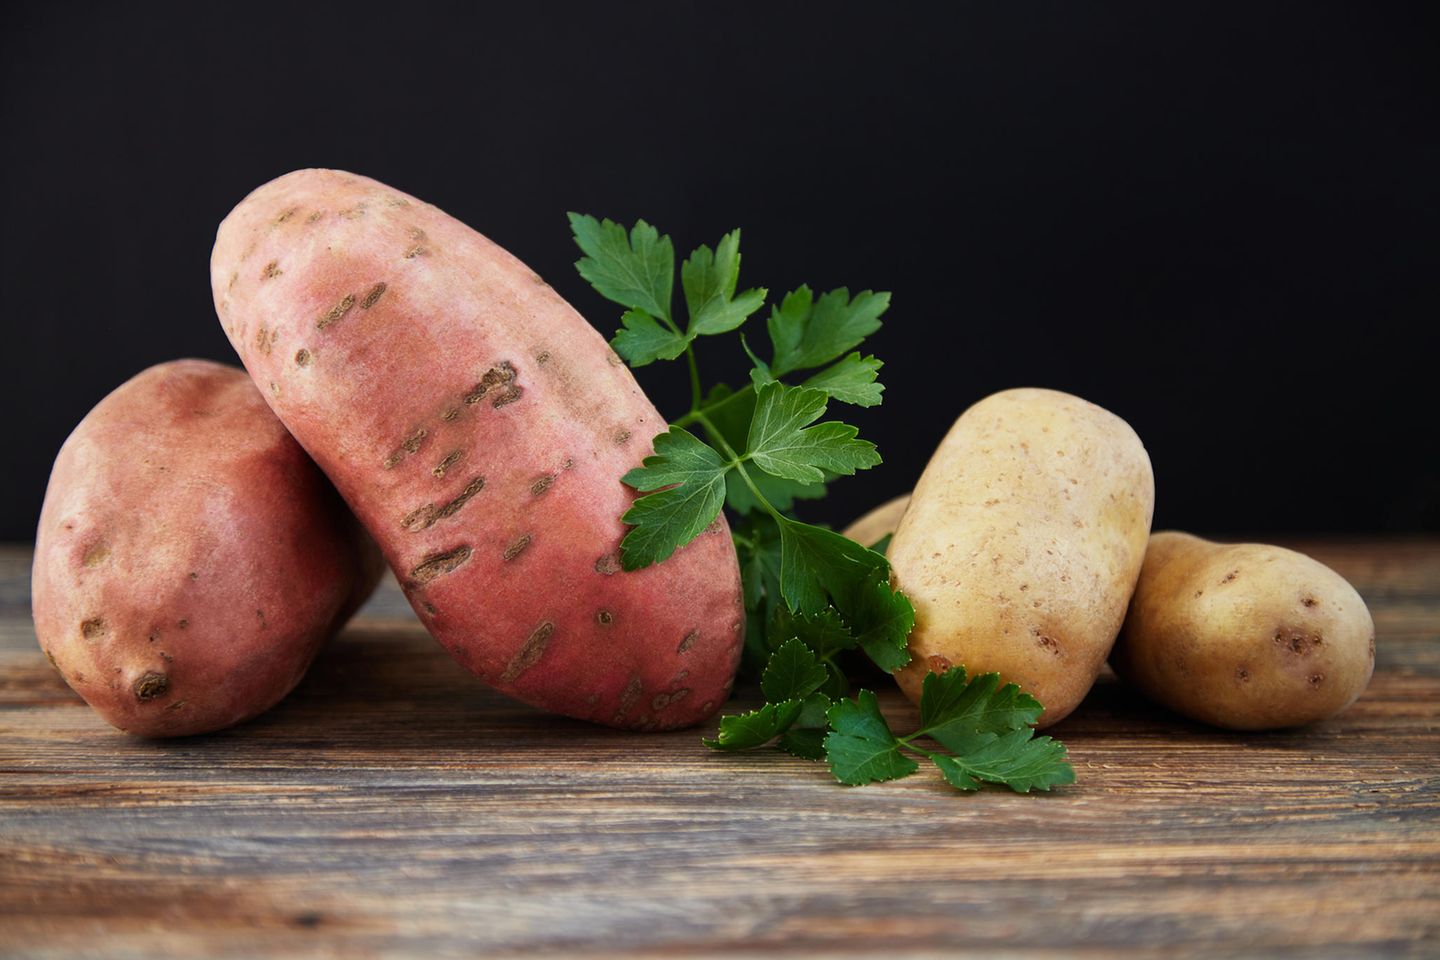 Kartoffel vs. Süßkartoffel: Was ist gesünder?